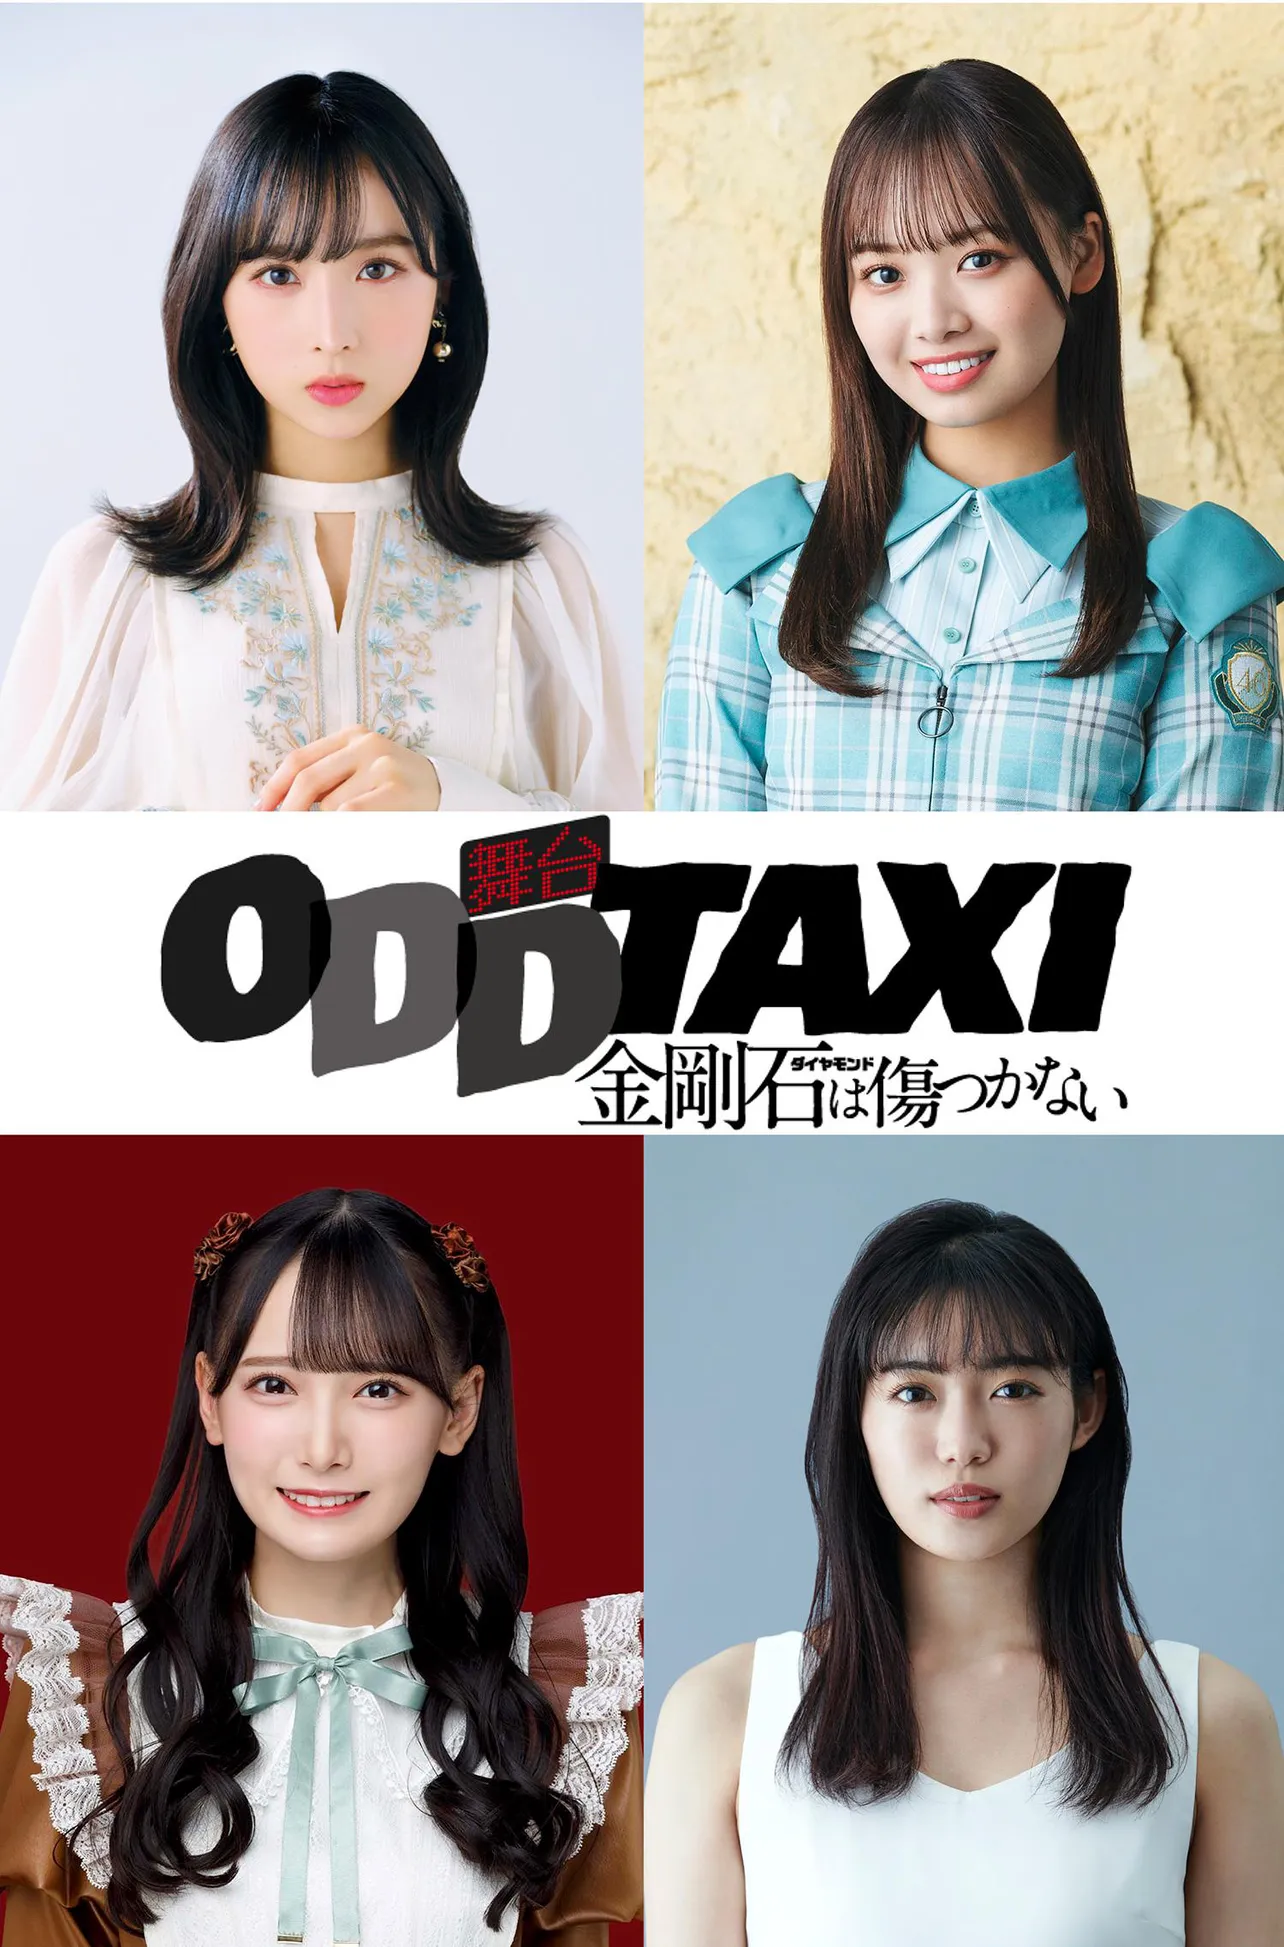 AKB48小栗有以、日向坂46濱岸ひよりら出演の舞台「オッドタクシー―」の上演が決定